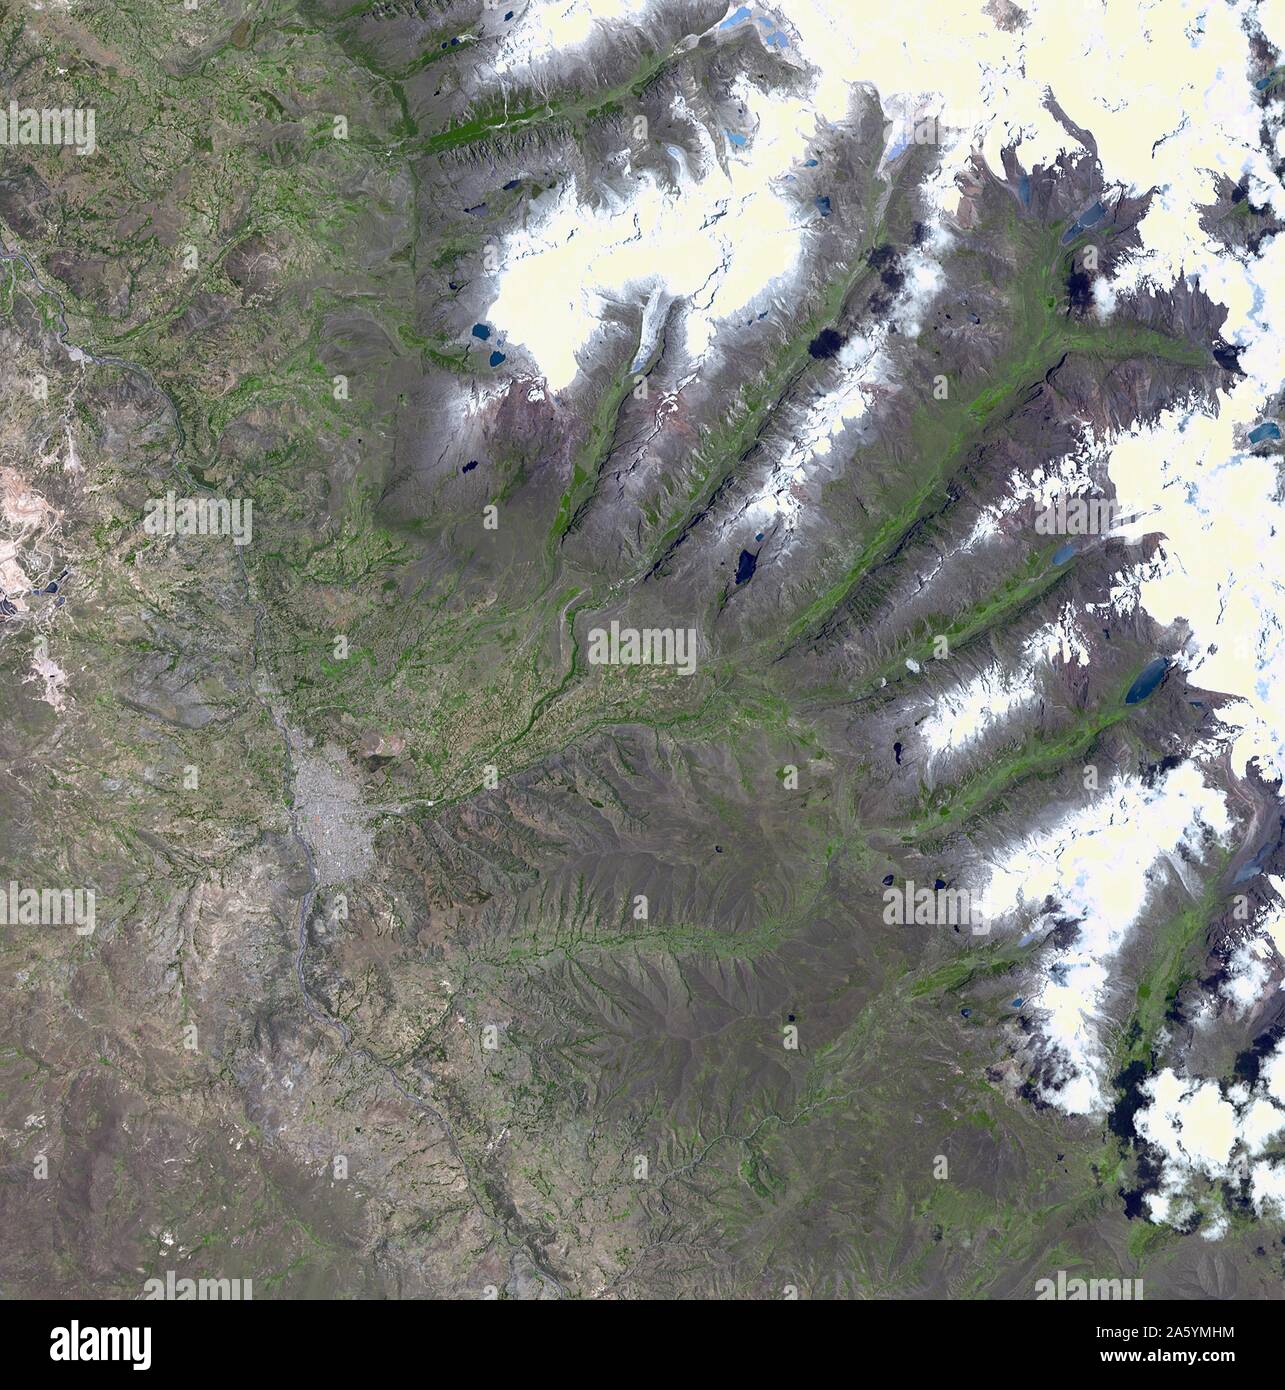 Un pezzo del ghiacciaio, rischia di cadere in un lago andino e causare gravi inondazioni in una città peruviana di 60.000. Il 5 novembre 2001. Immagine satellitare. Foto Stock